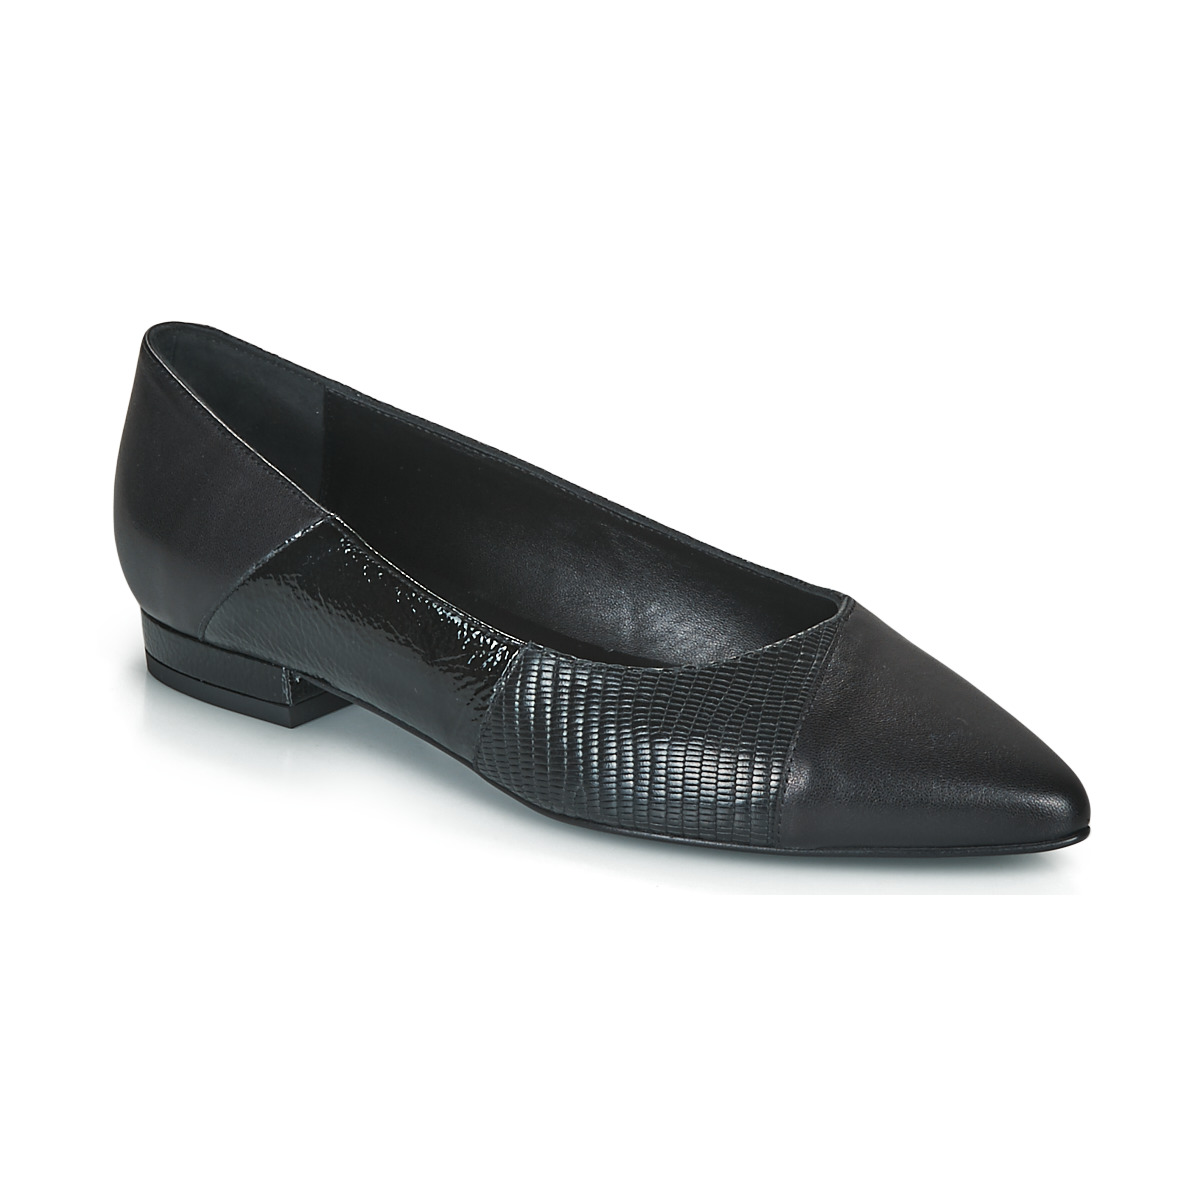 Chaussures Femme Épuisé - Voir des produits similaires TENDRE NAPPA NOIR